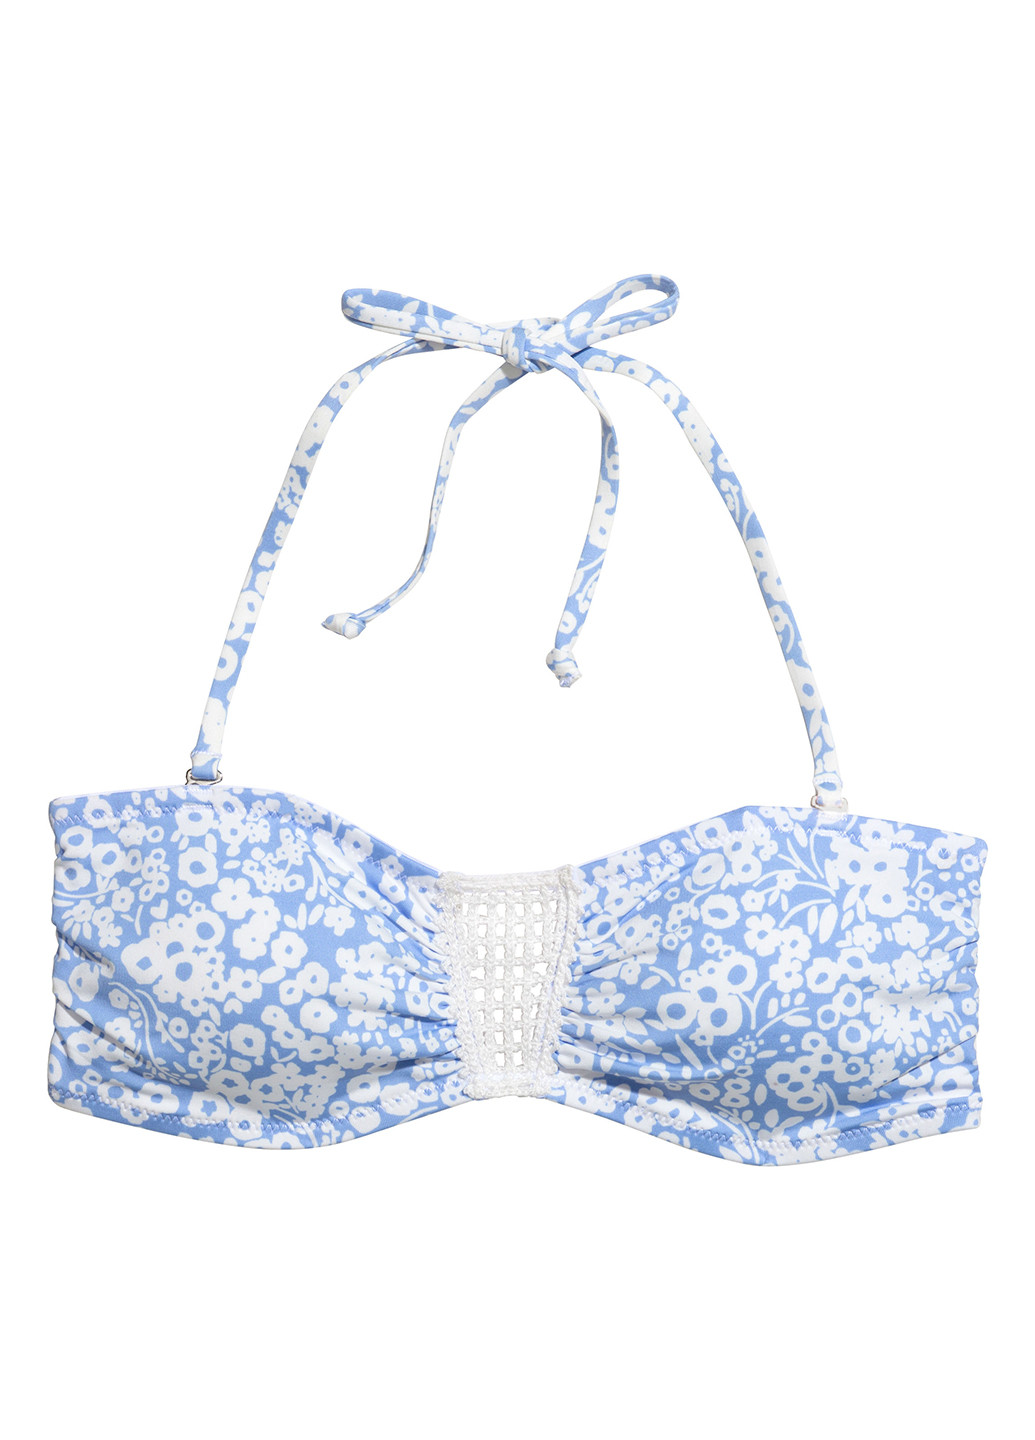 Купальный лиф H&M бандо цветочный голубой пляжный